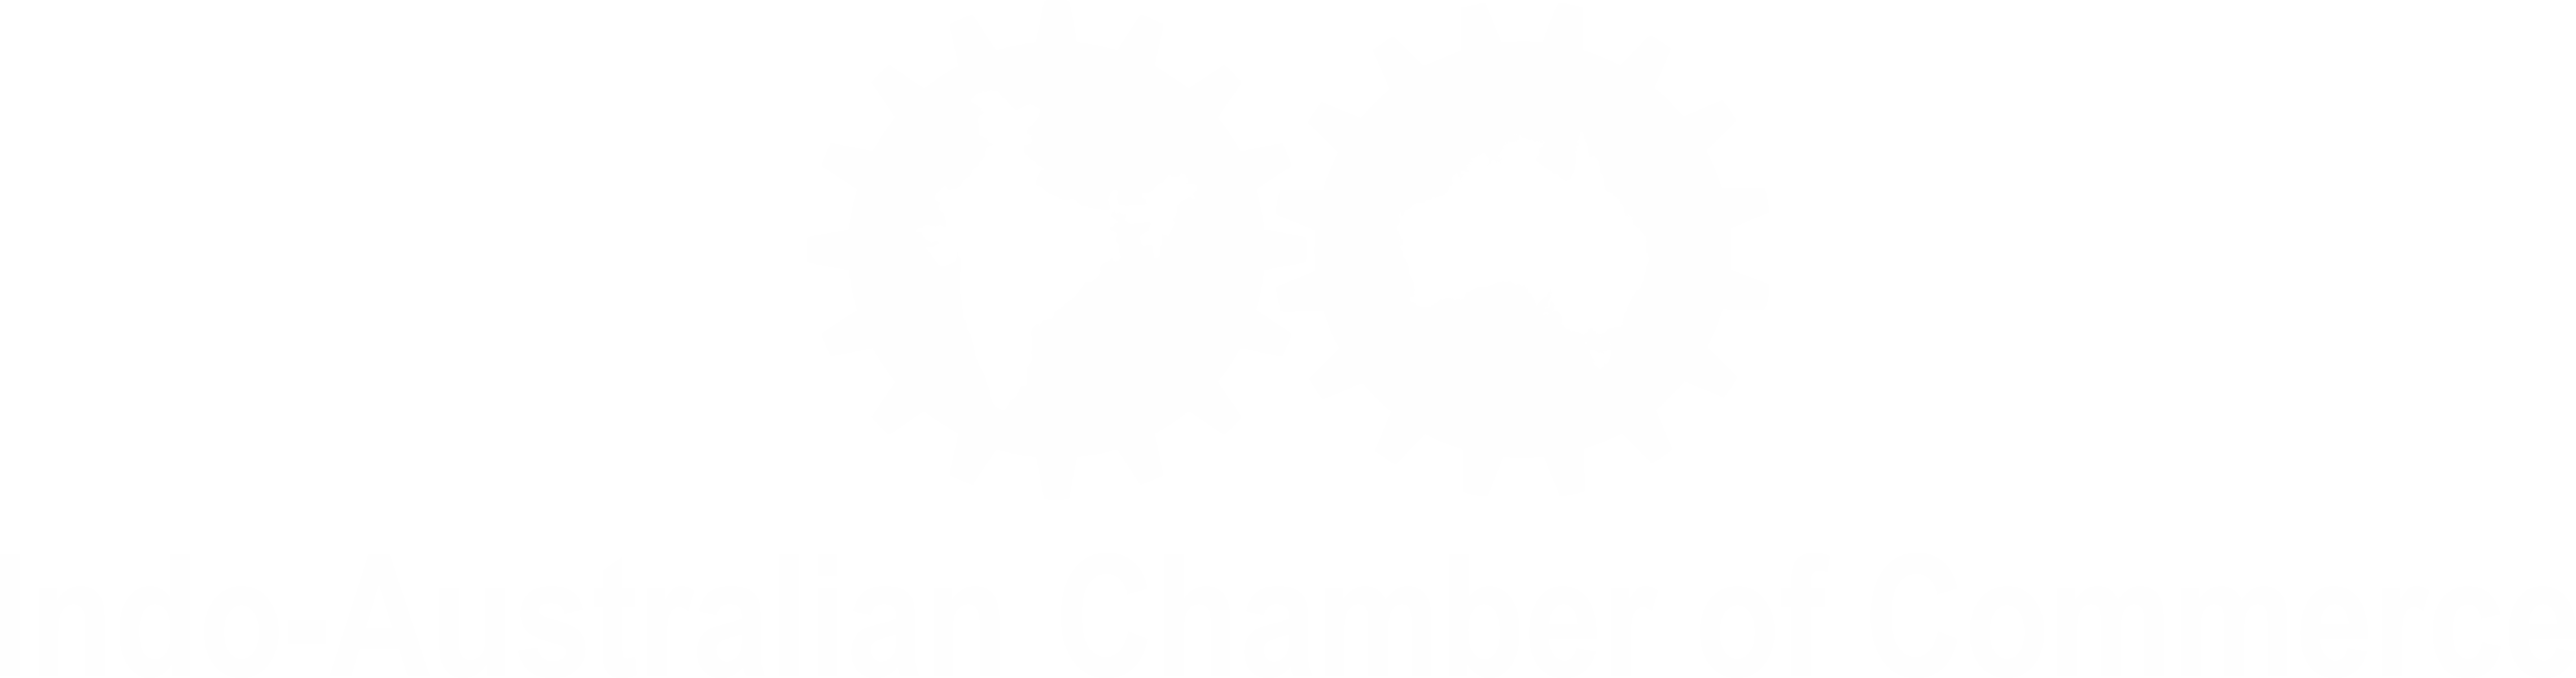 Indo-Australian Chamber of Commerce